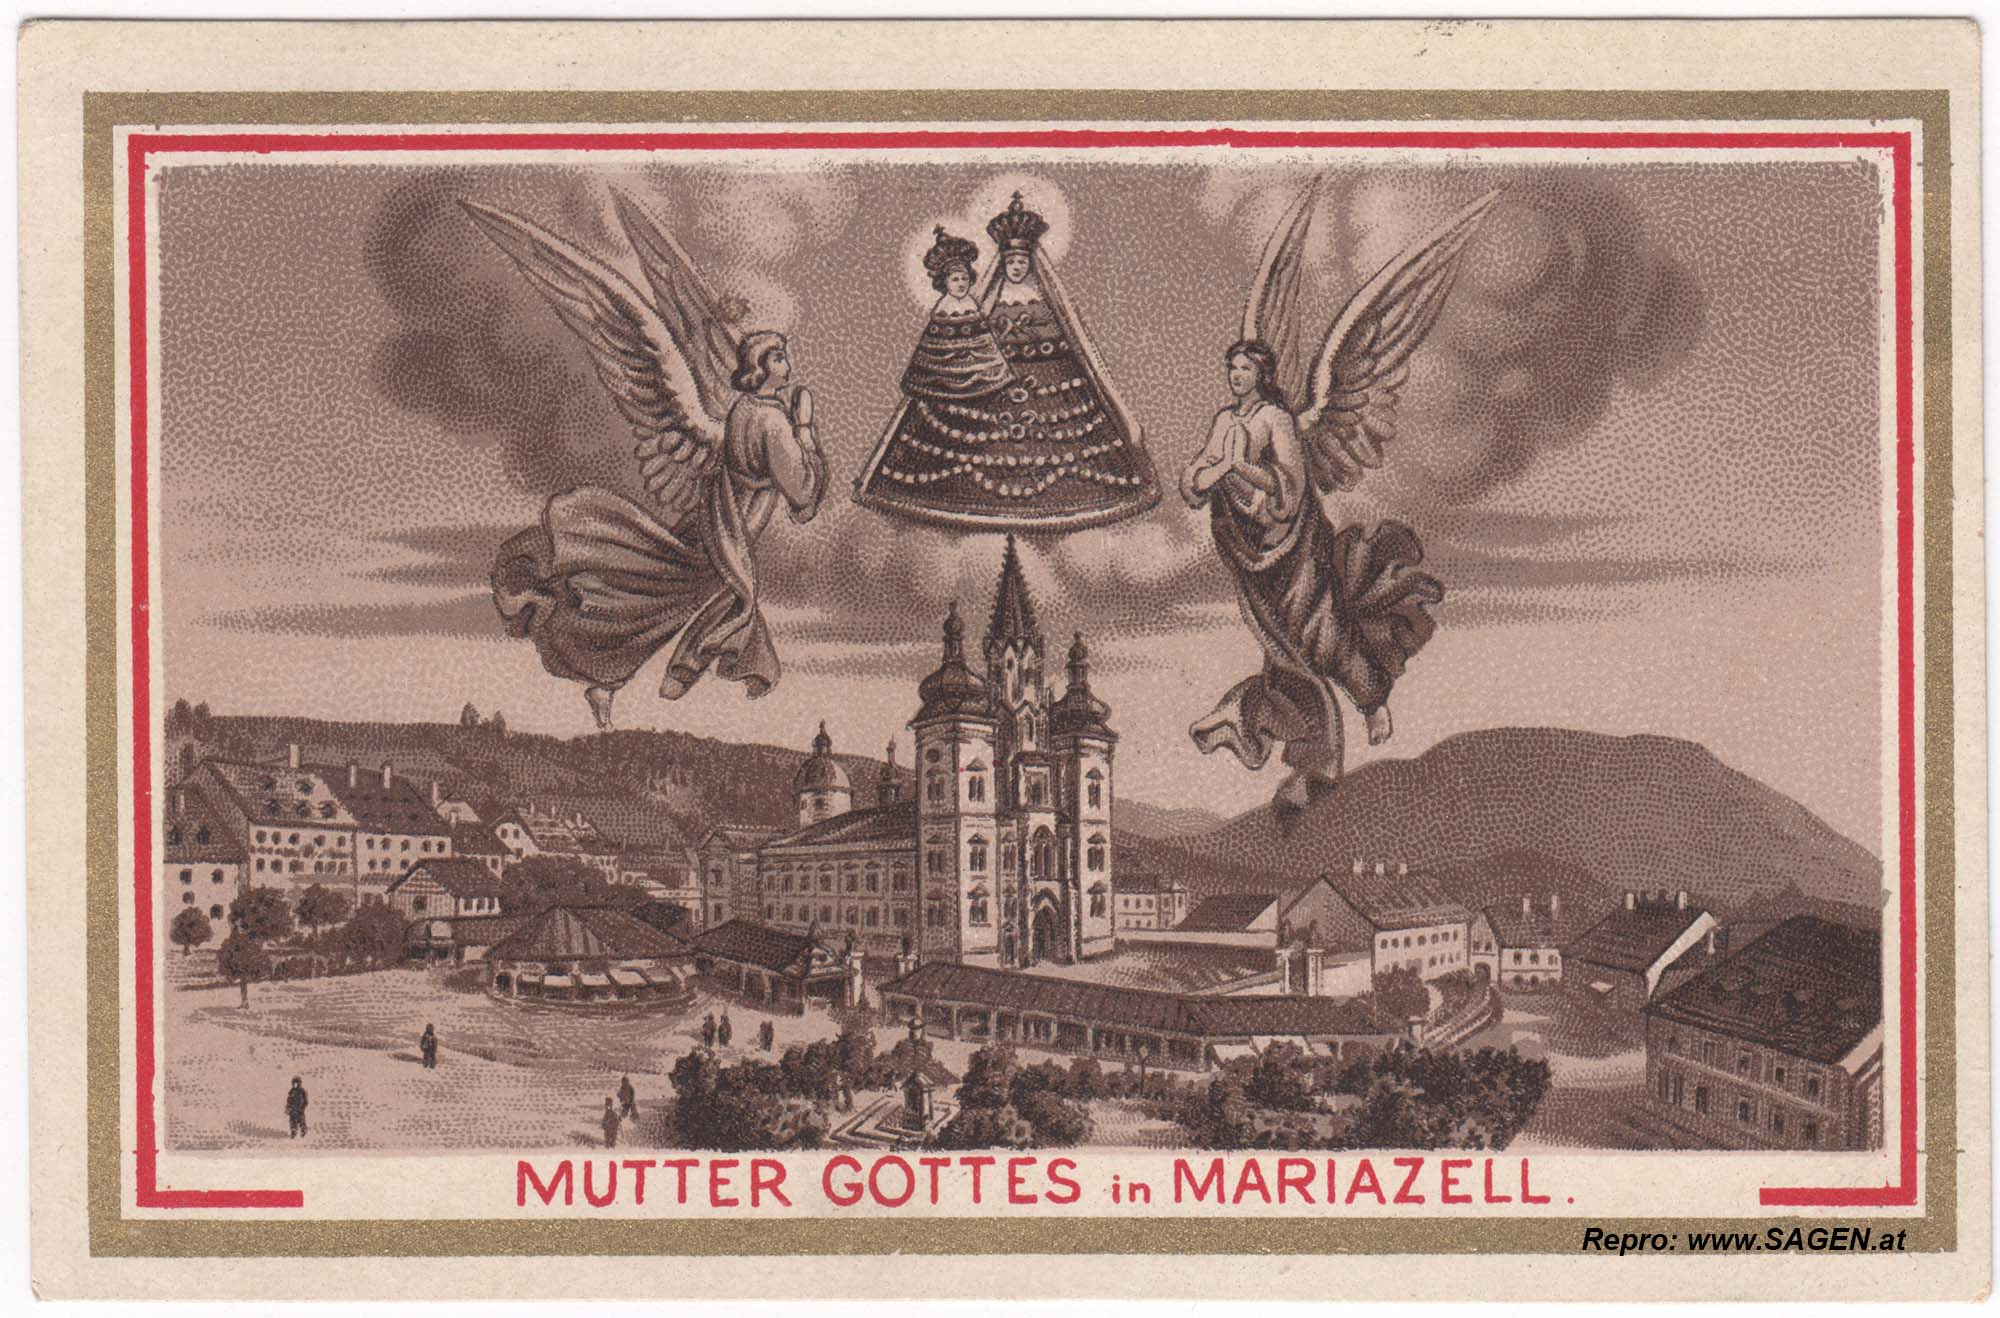 Andenken Mutter Gottes in Mariazell